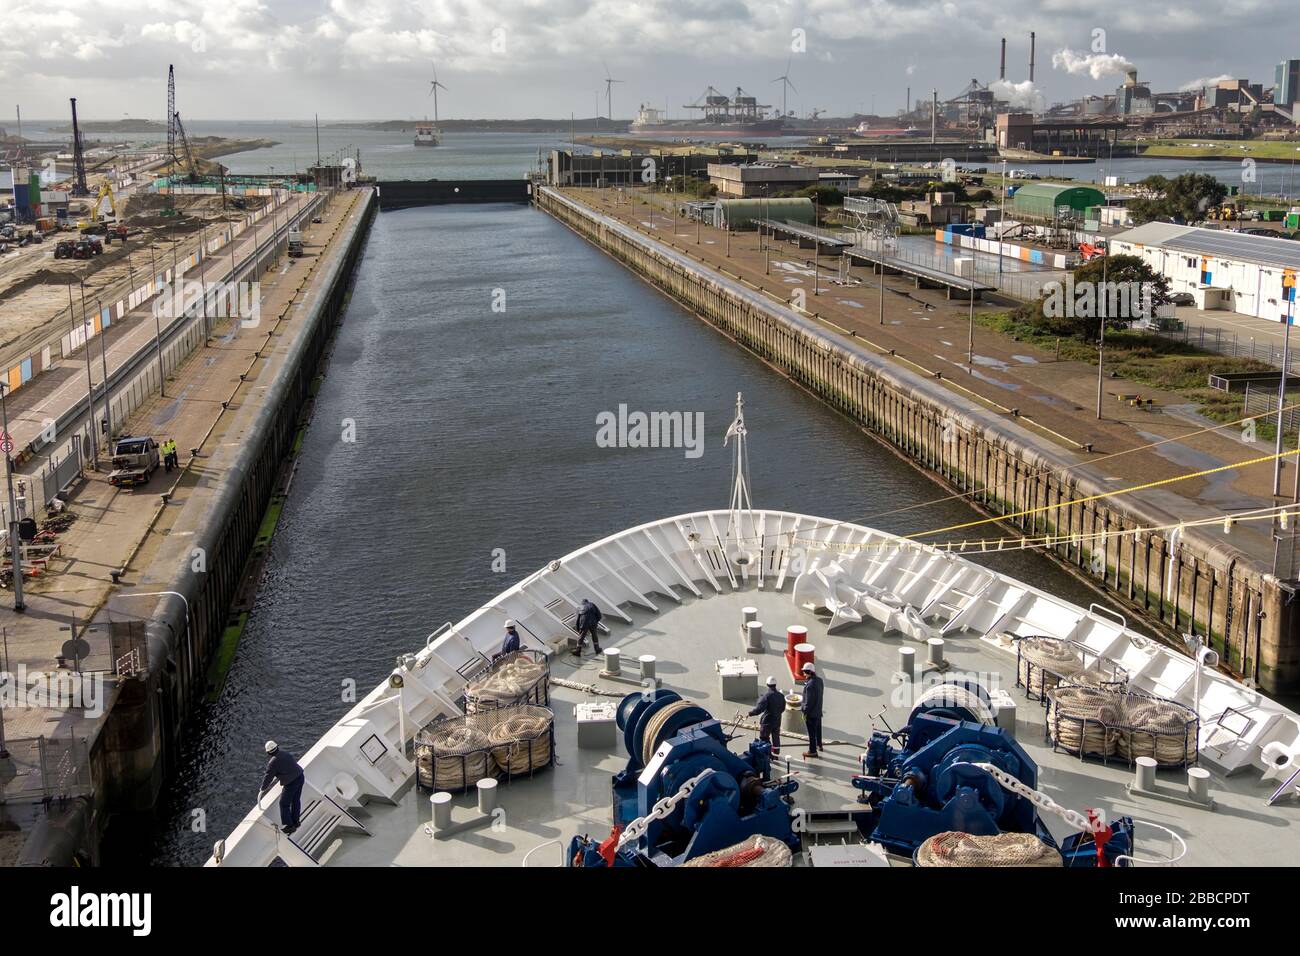 Vista desde el crucero que entra en la cerradura de IJmuiden que conecta Amsterdam (aproximadamente 25 km), a través del Canal del Mar del Norte, al Mar del Norte. Foto de stock